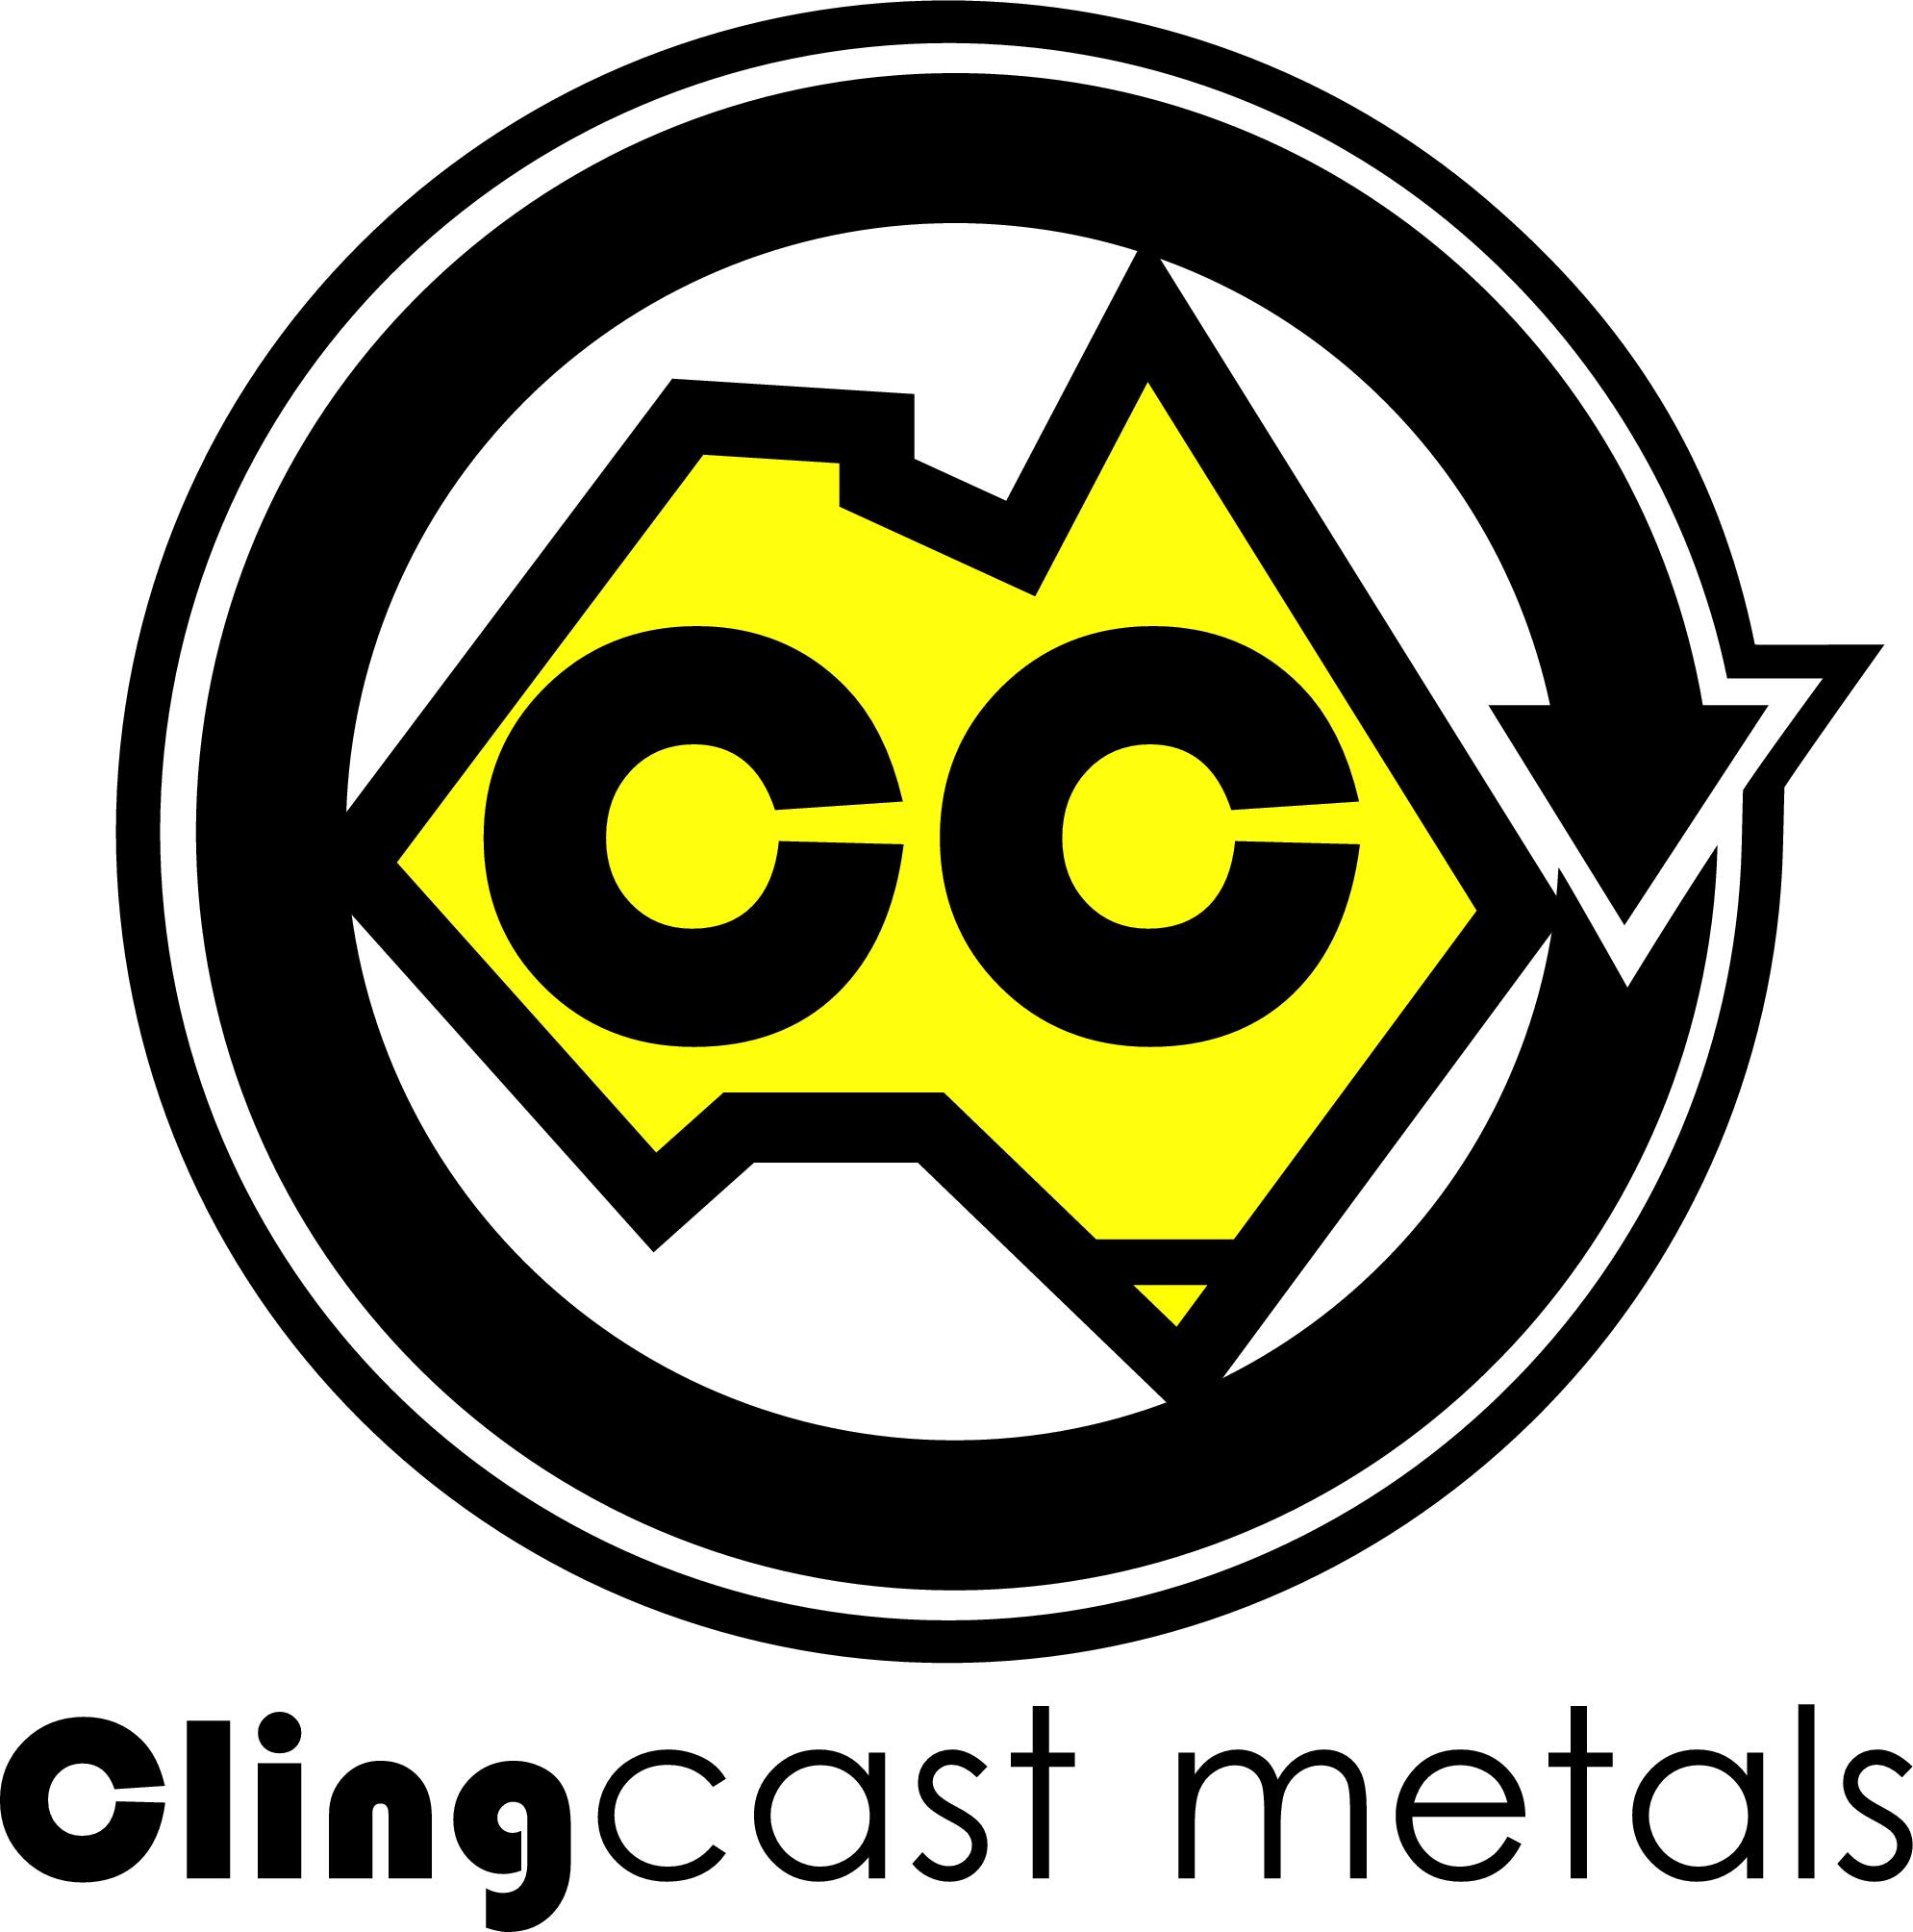 Clingcast Metals